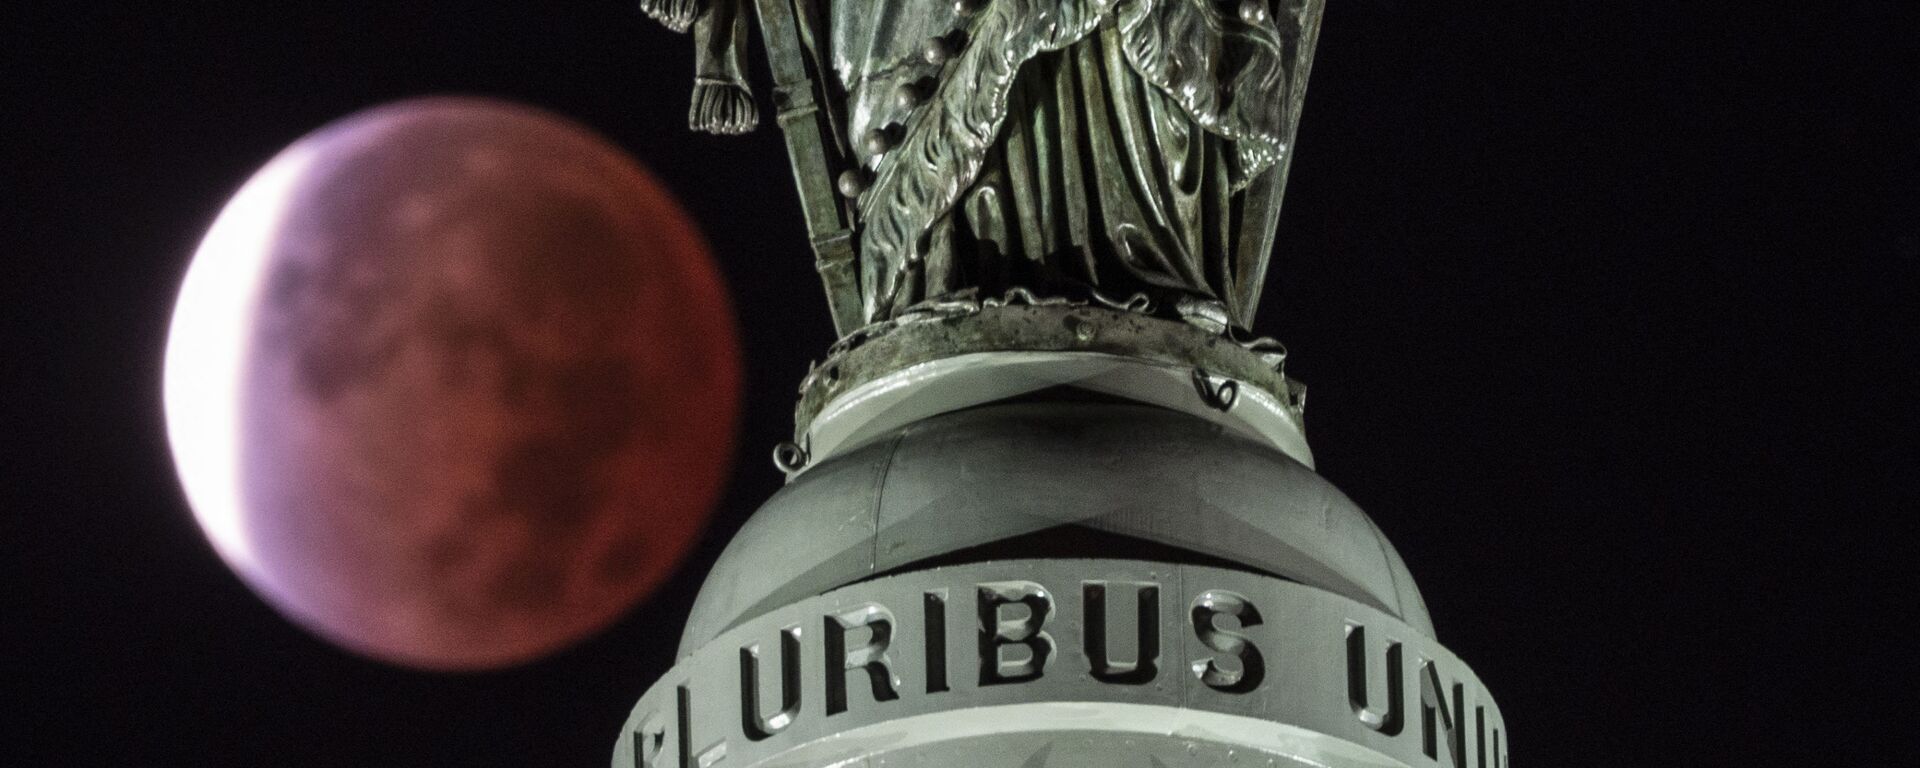 Лунное затмение над Статуей Свободы в Вашингтоне - Sputnik Азербайджан, 1920, 20.11.2021